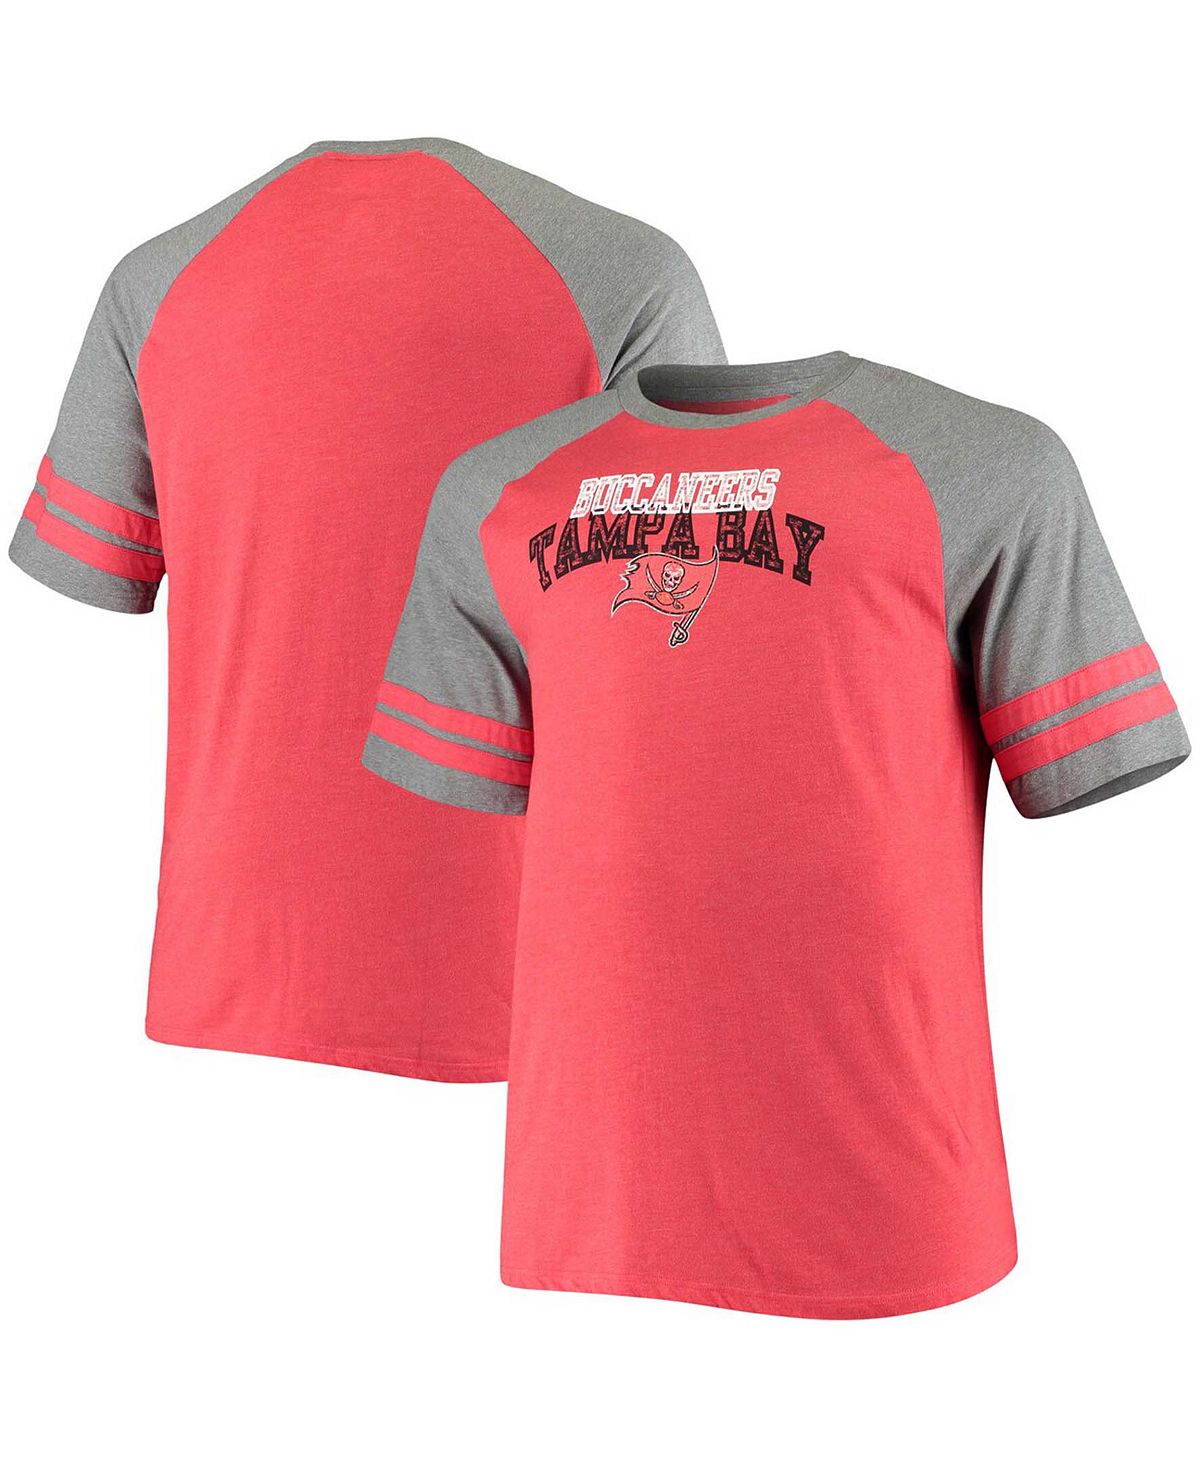 Мужская футболка большого и высокого роста, красная, меланжевая, серая, футболка tampa bay buccaneers с двумя полосками и смешанными регланами Fanatics, мульти